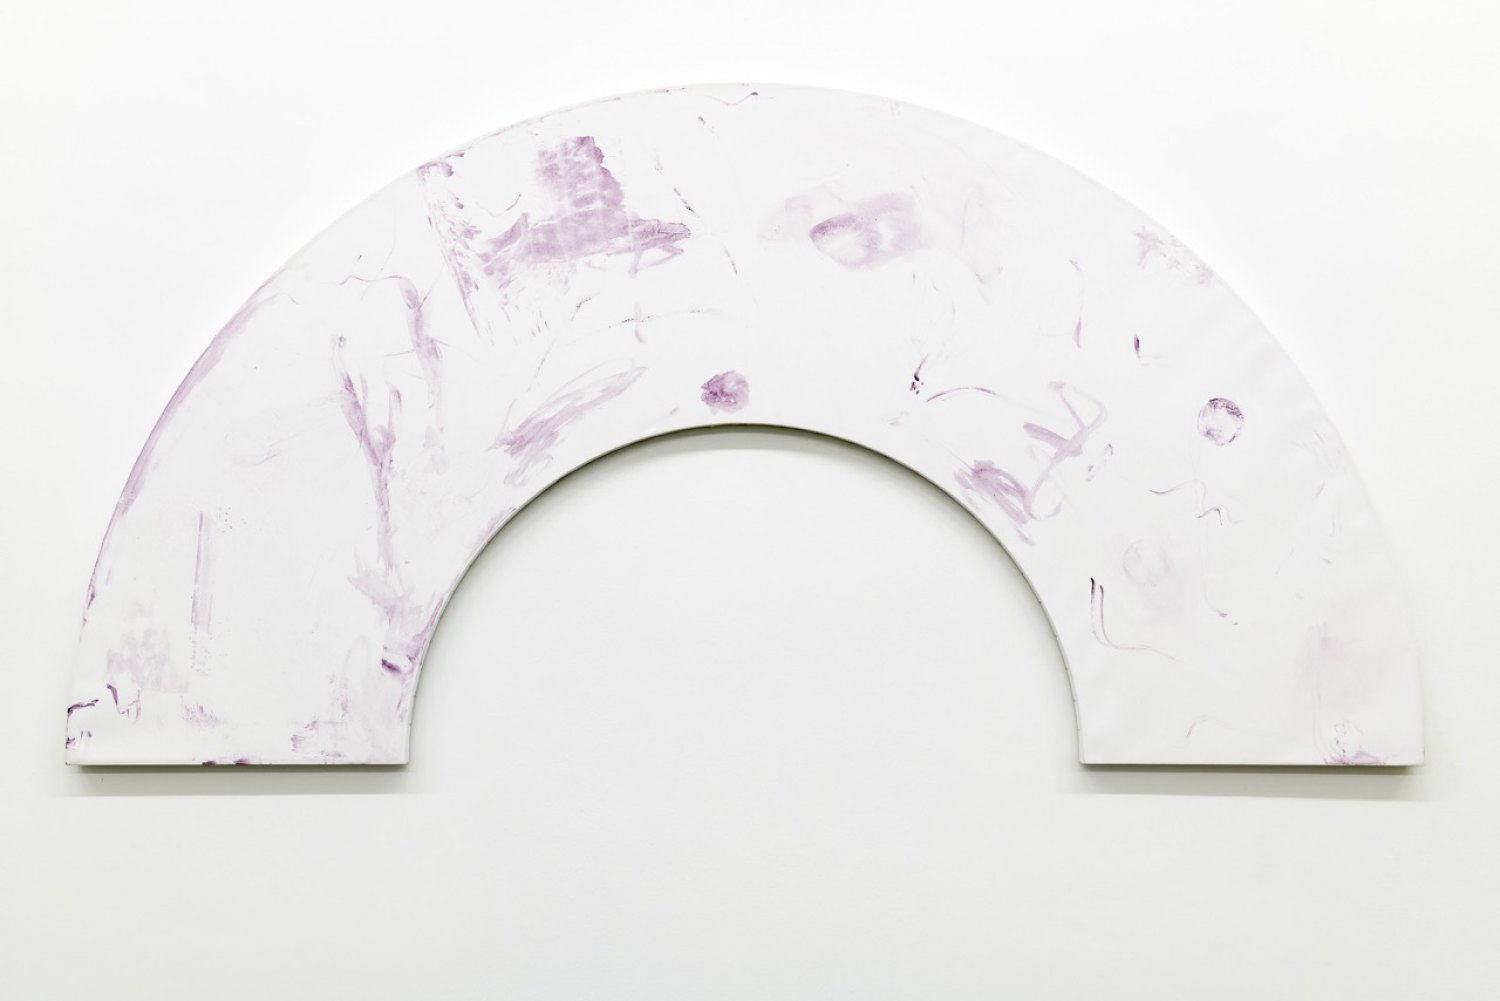 Fan, 2020, Tyrian purple on canvas, 218 x 109 x 2.5 cm